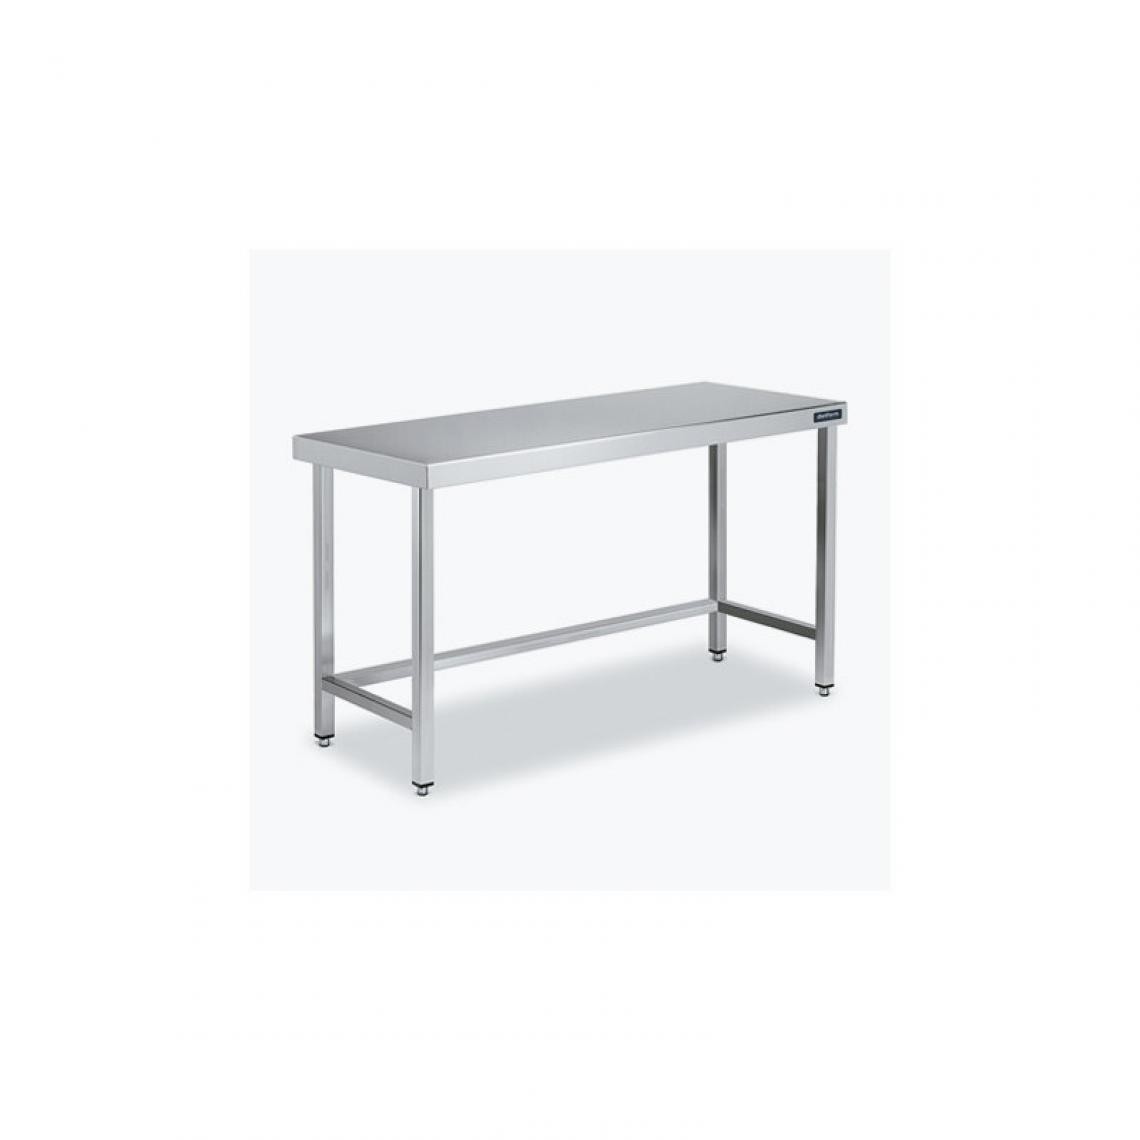 DISTFORM - Table Centrale 600x700 avec Renforts - Distform - Inox 18/102600x700x850mm - Tables à manger